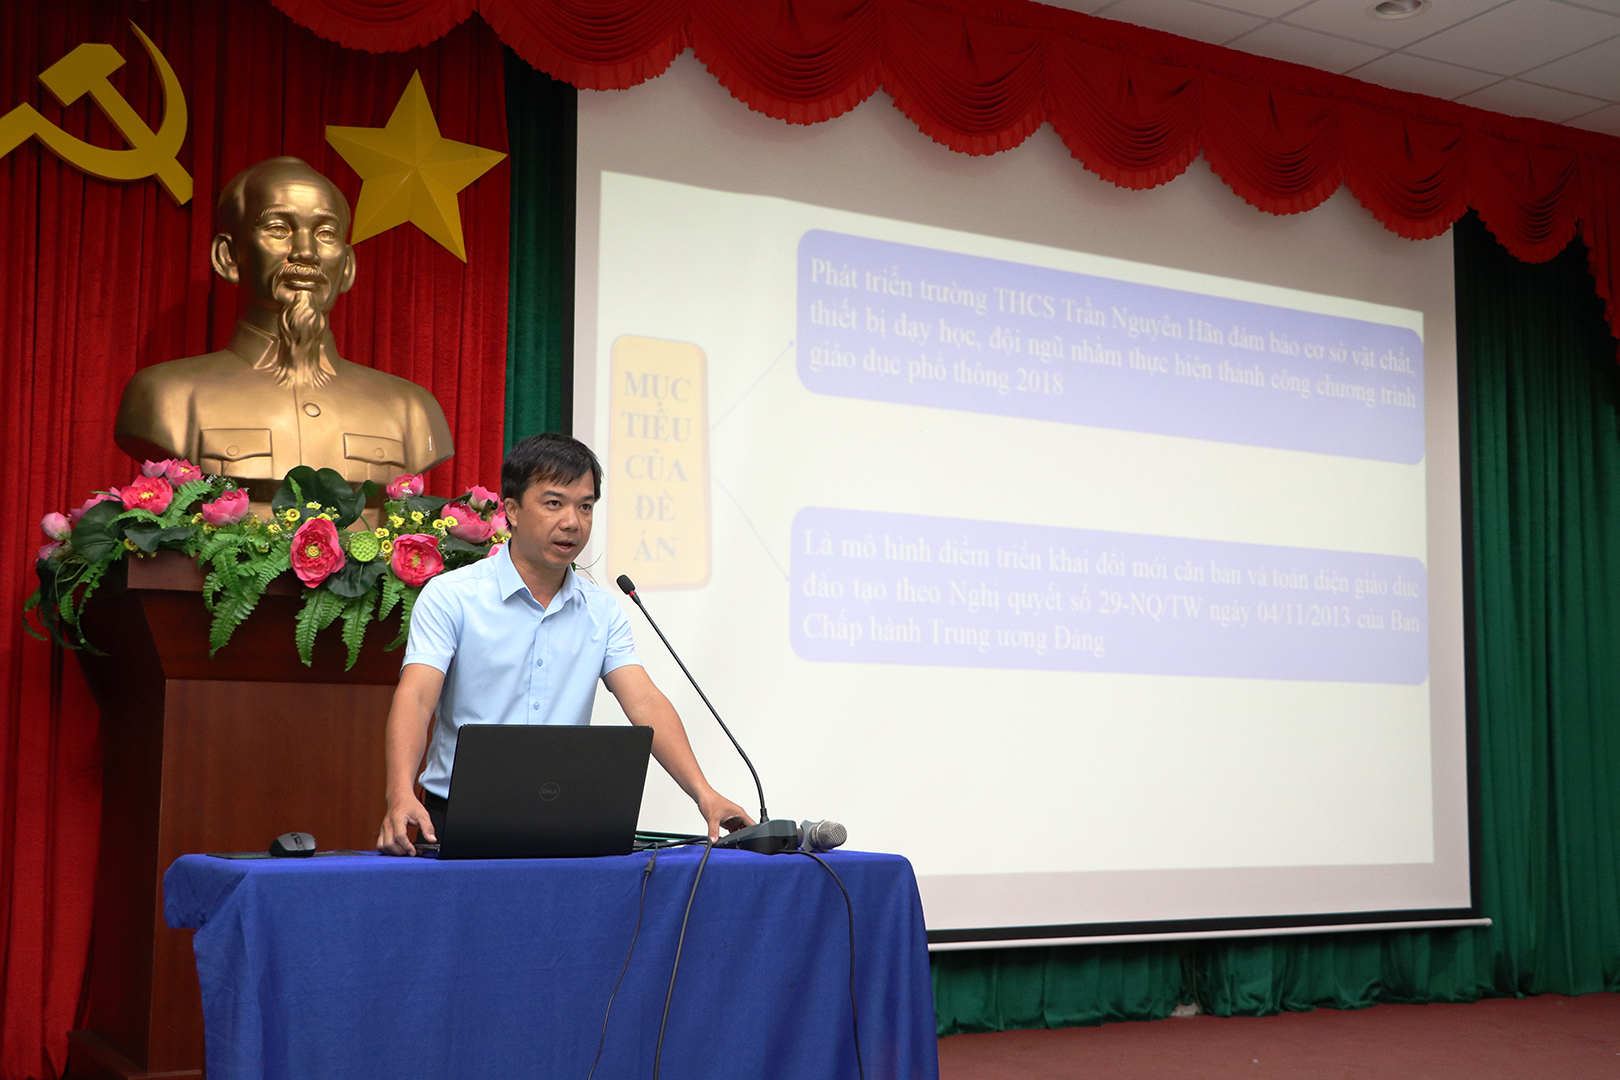 Thí sinh Võ Thanh Khánh, Phó hiệu trưởng Trường THCS Văn Lương dự tuyển chức danh Hiệu trưởng Trường THCS Trần Nguyên Hãn trong phần thi trình bày Đề án.